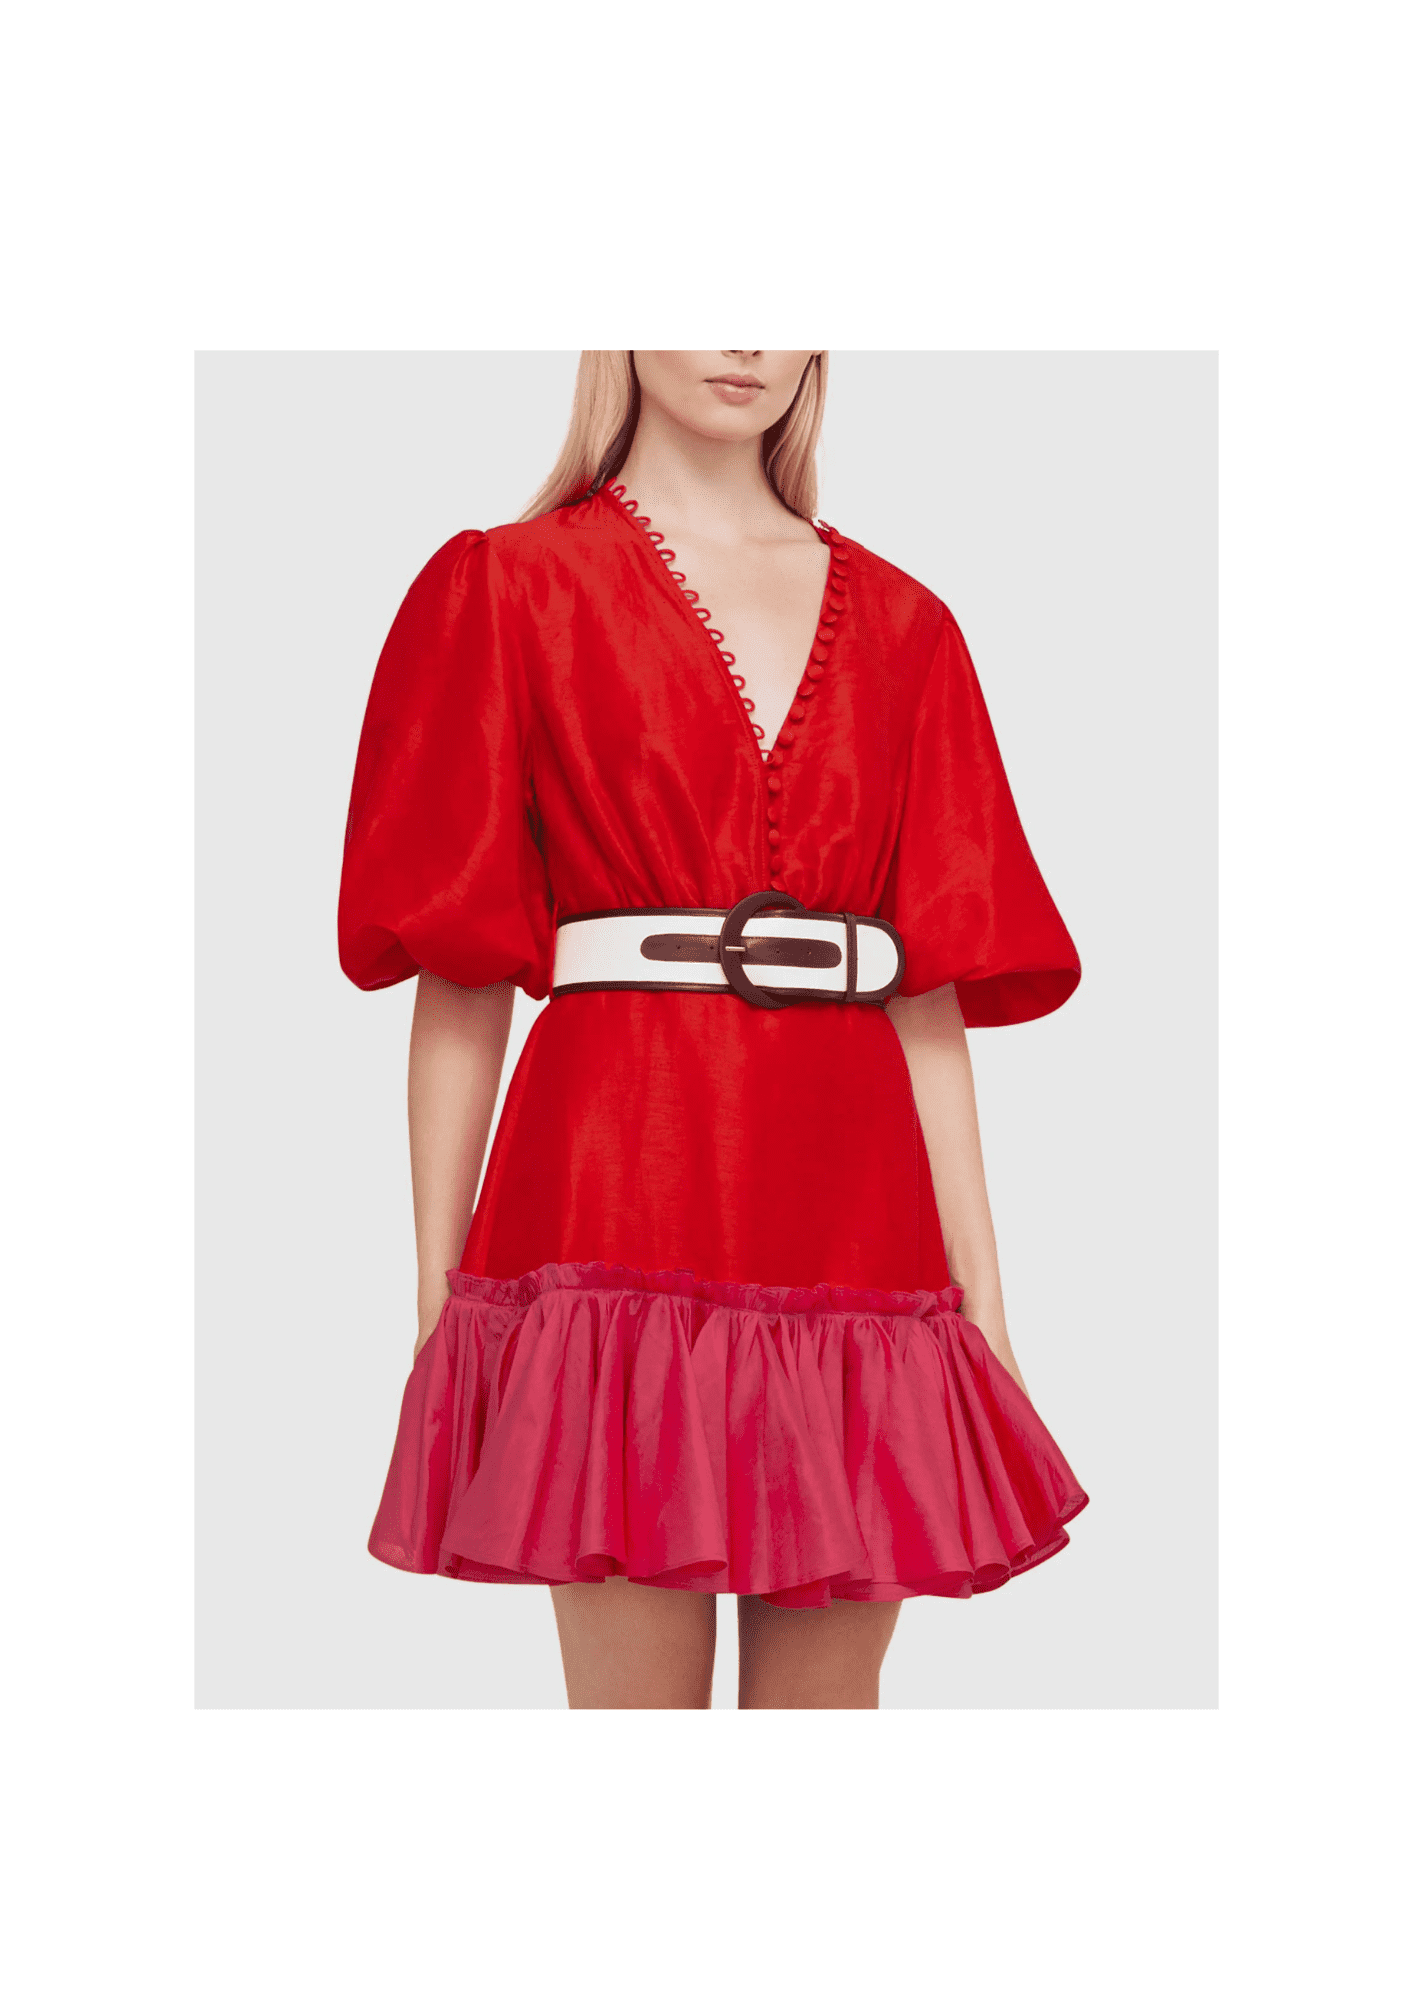 LEO LIN - Fuchsia Rose Mini Dress